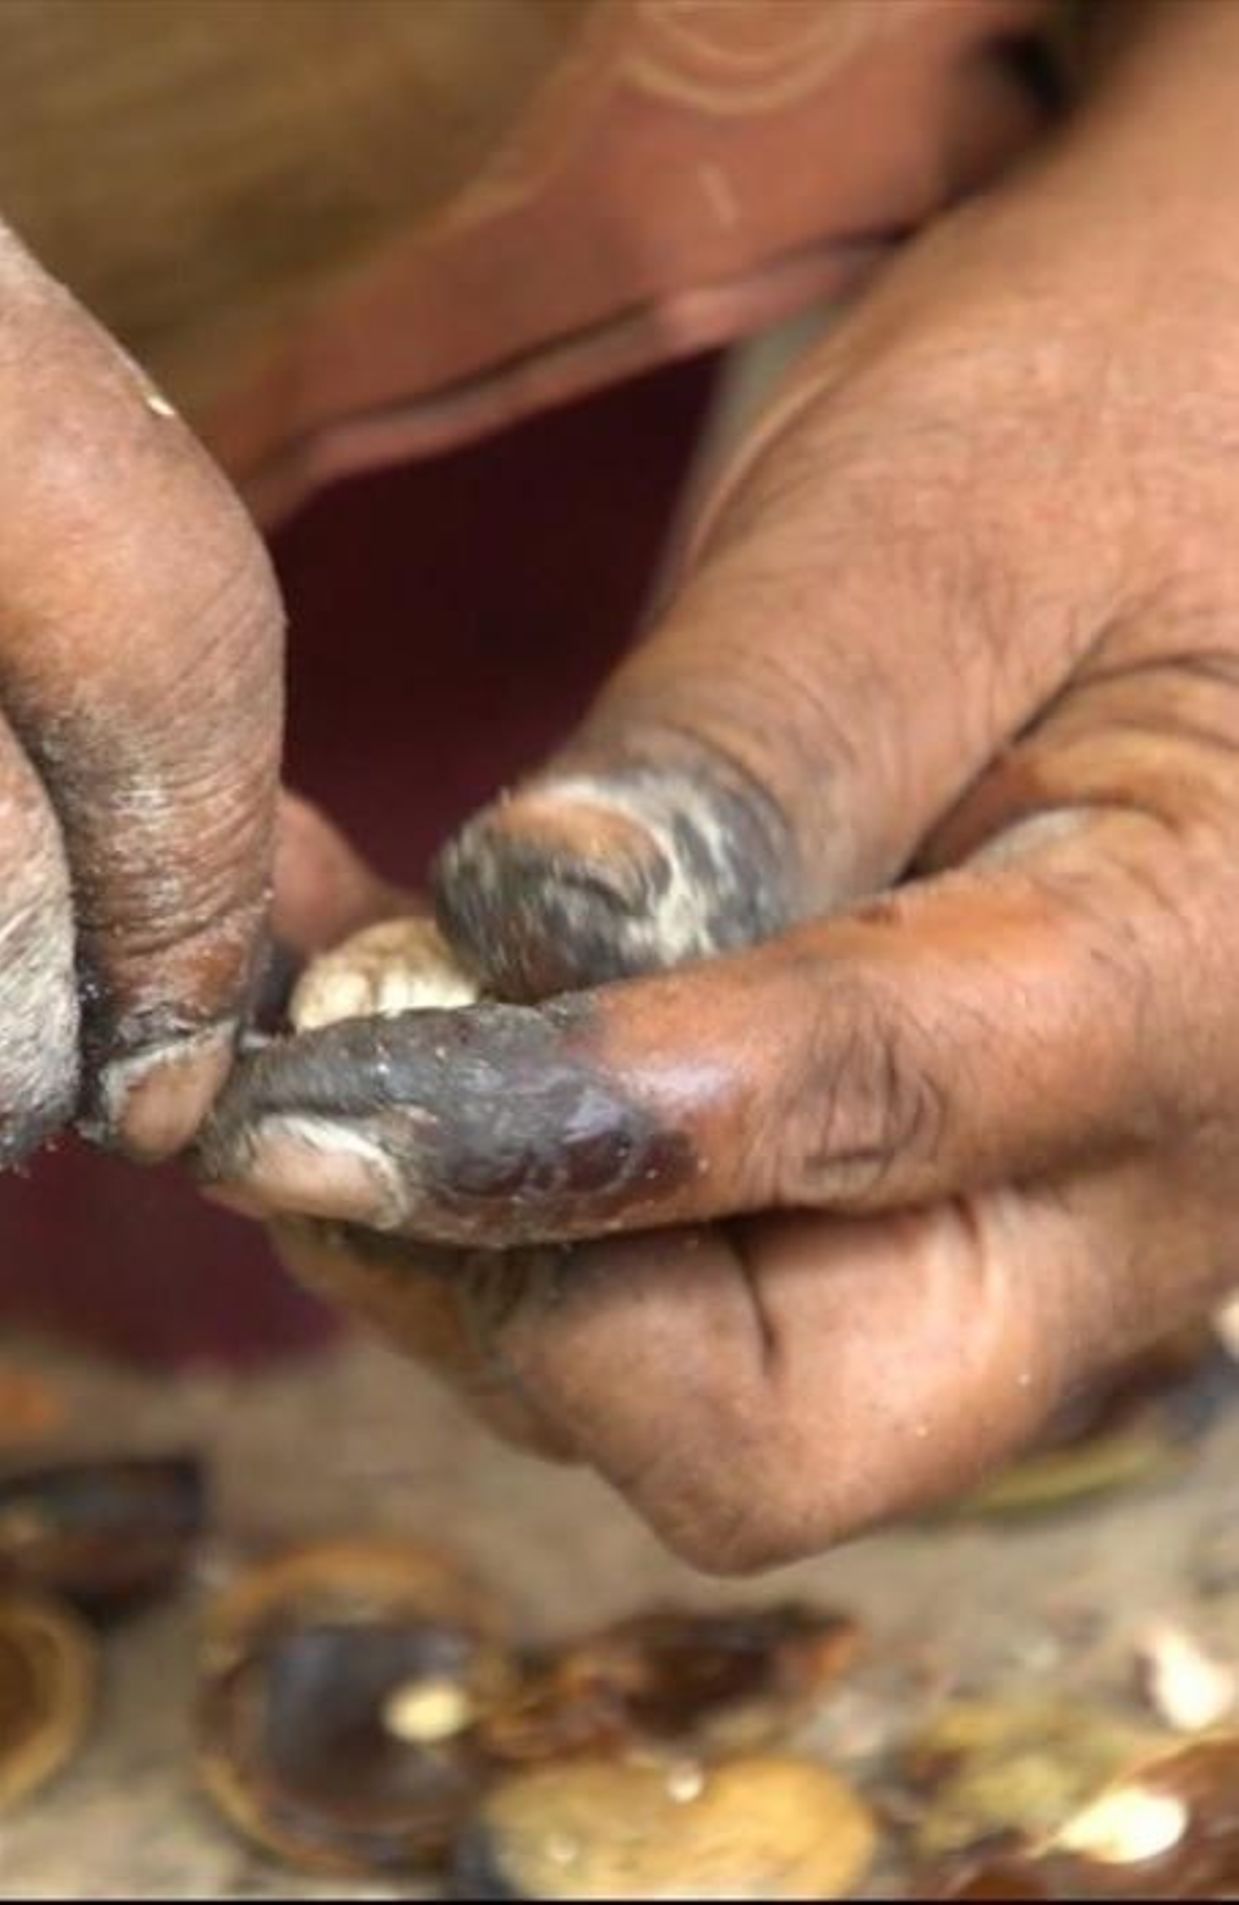 La cueillette de noix de cajou, toxique pour les mains